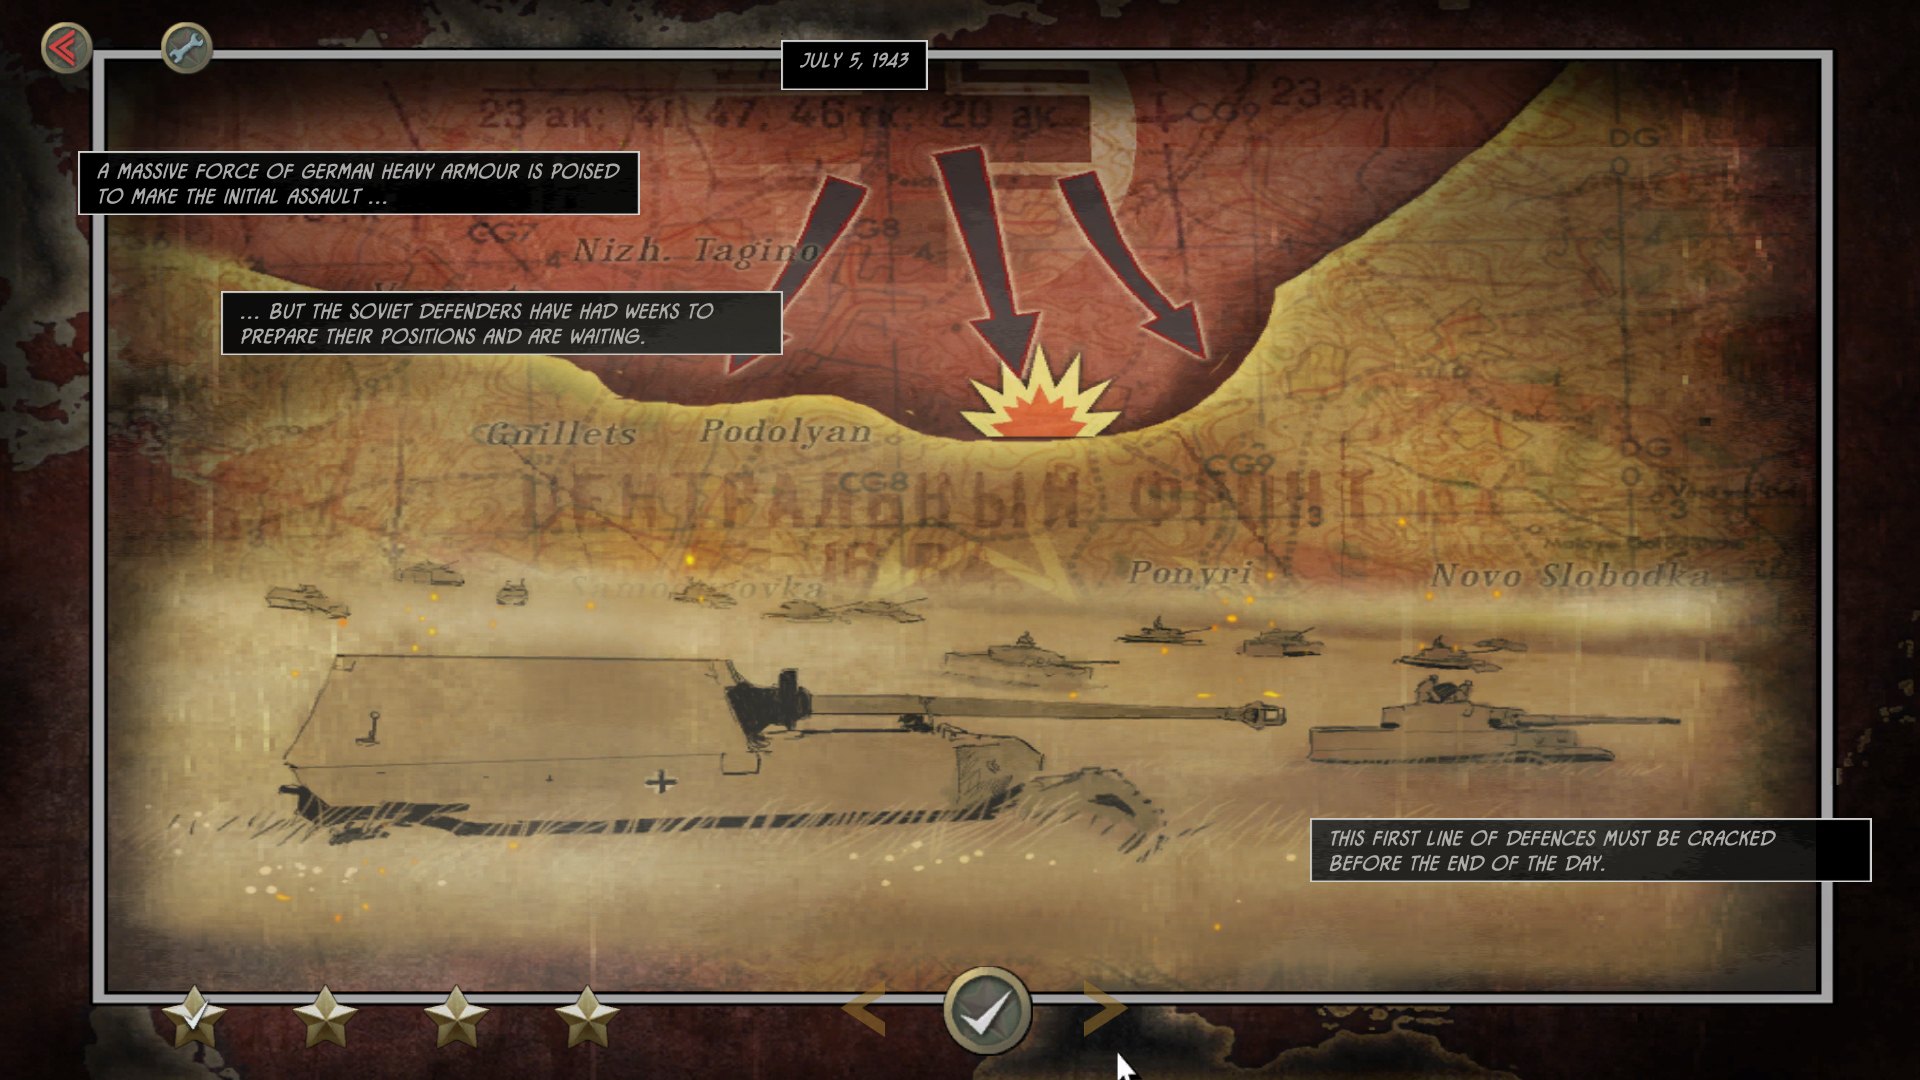 Battle Academy 2 - Battle Of Kursk DLC Steam CD Key